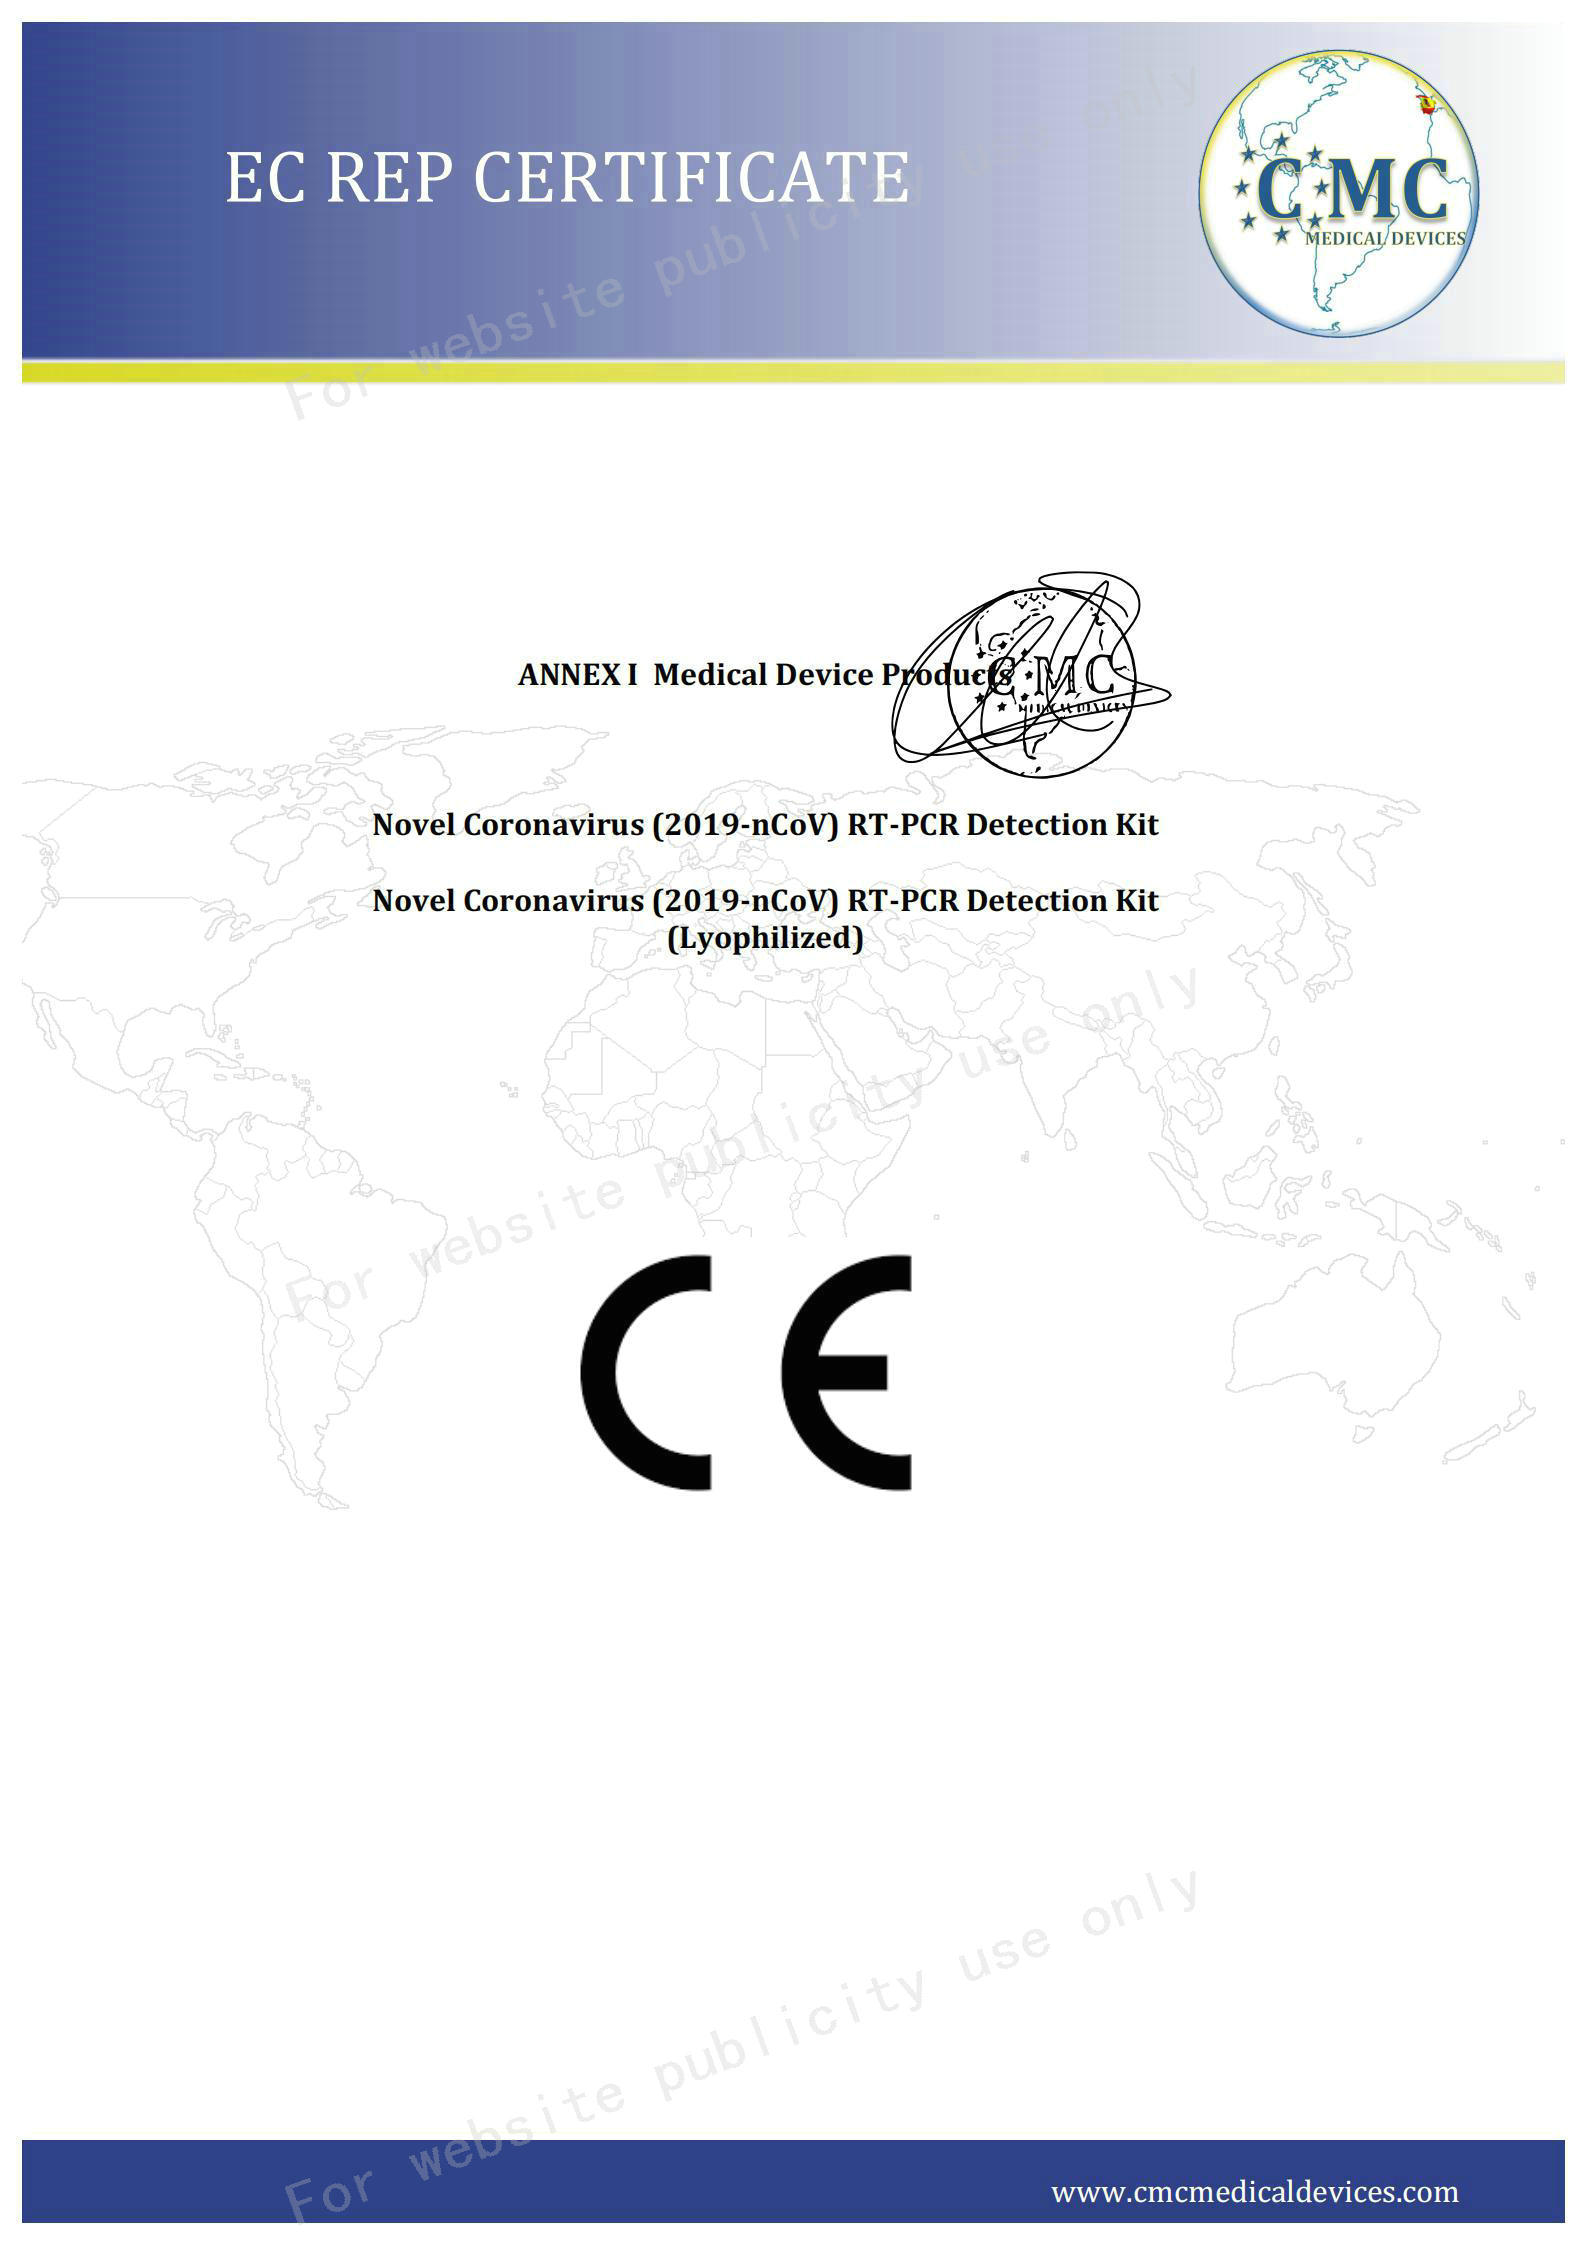 02 CE certifikat stranica 2